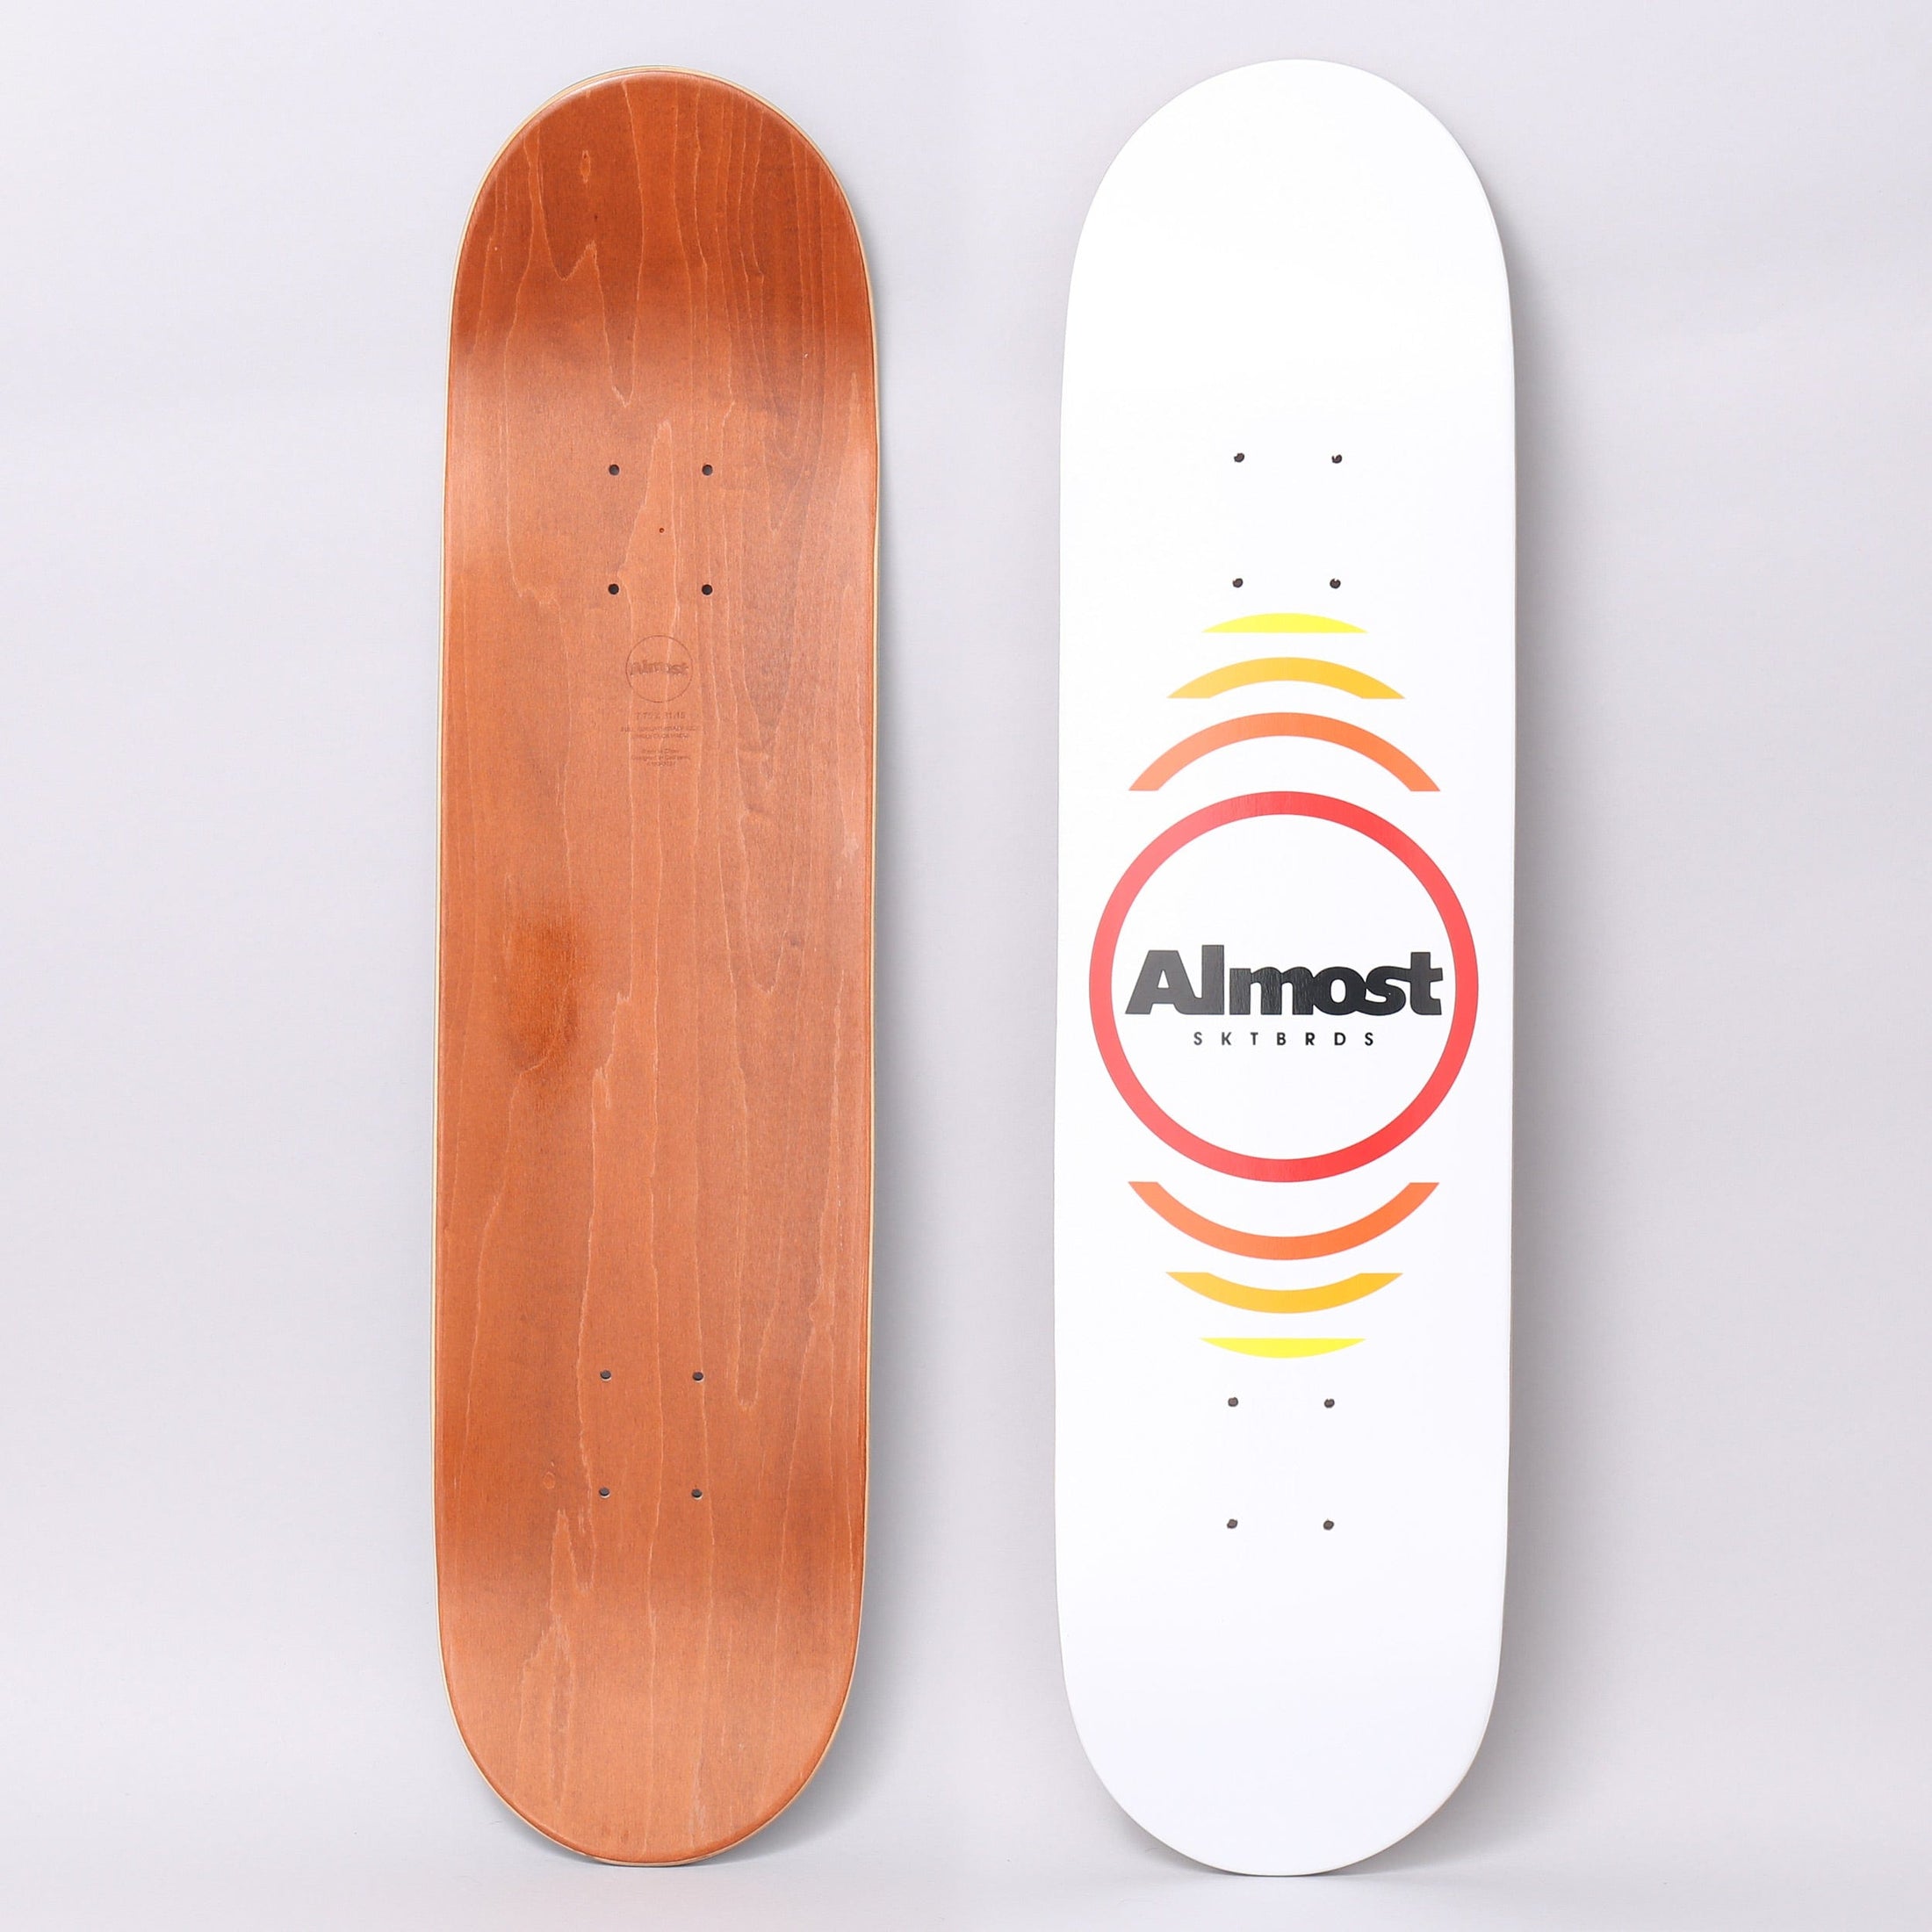 Almost 7.75 Reflex Skateboard Deck White